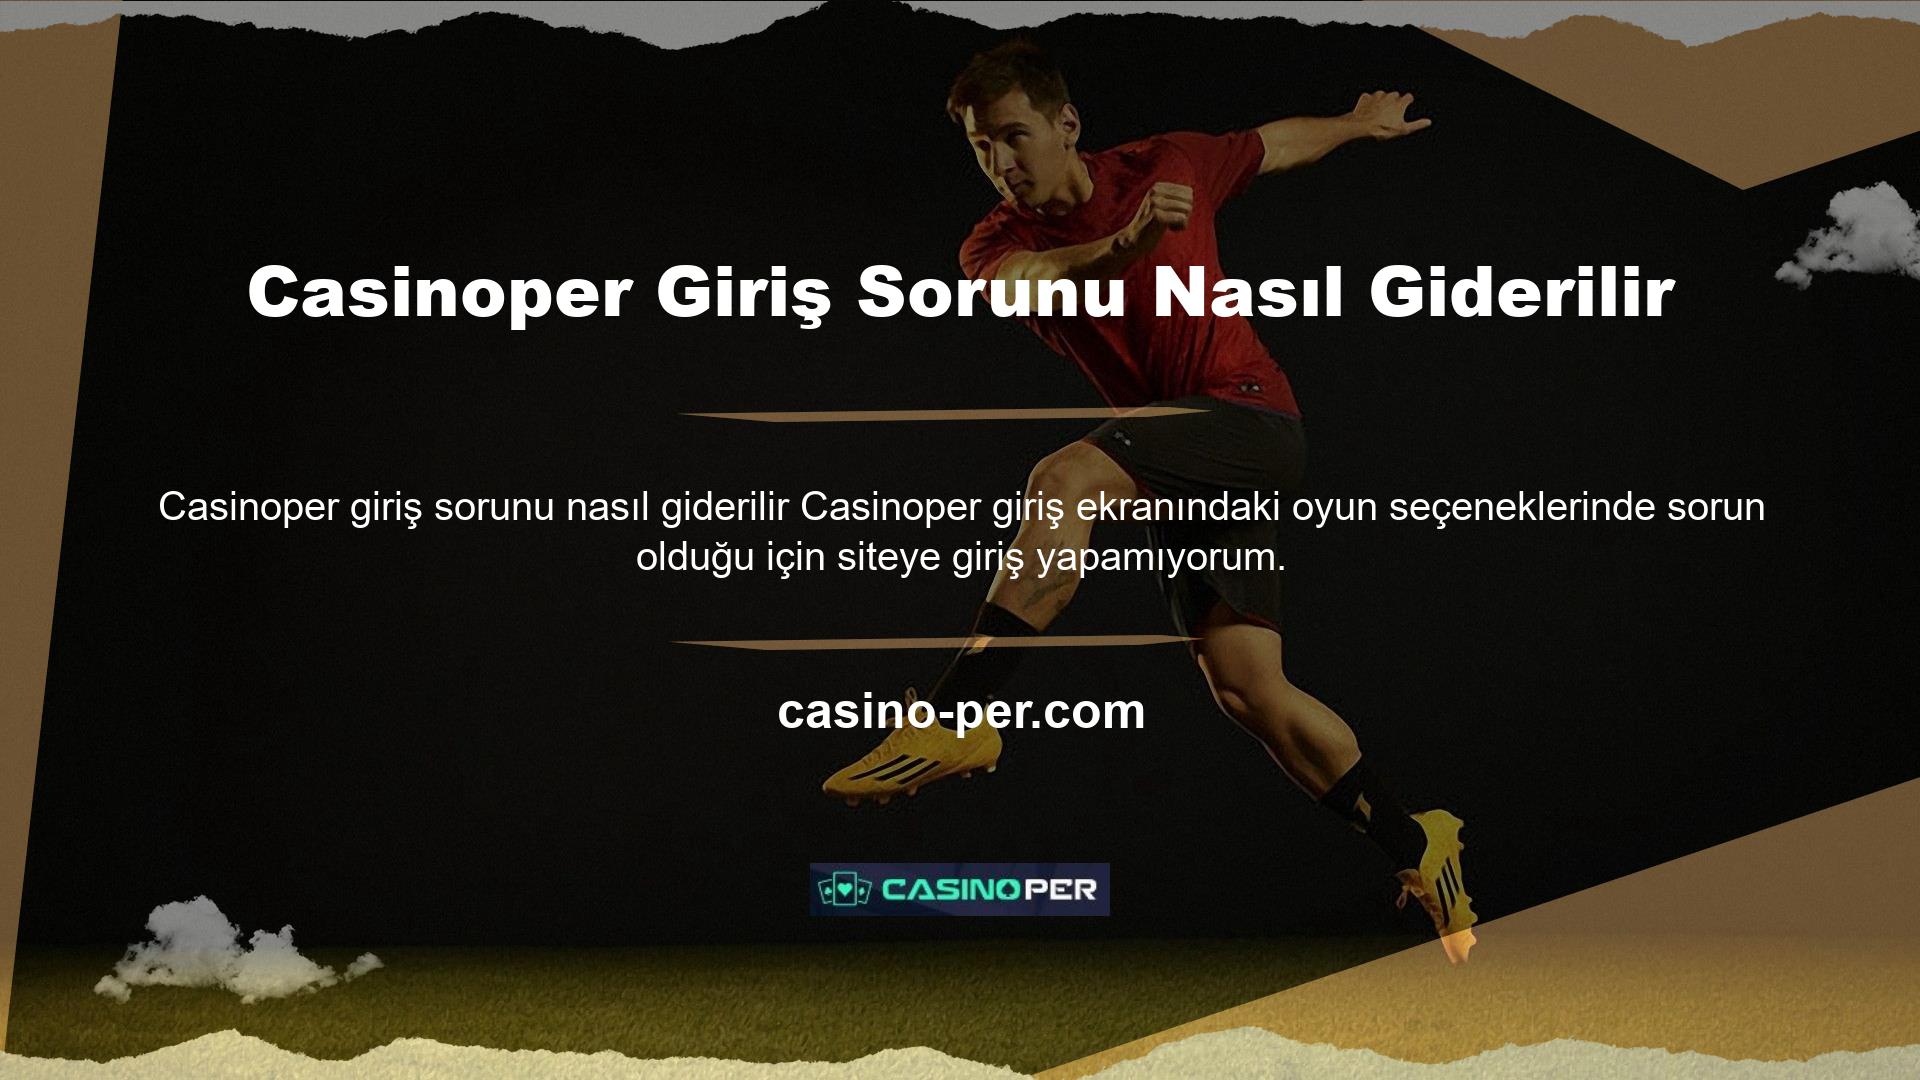 Bu durumda oyuncu, Casinoper giriş sorununun nasıl çözüleceğini Casinoper web sitesinde araştırır